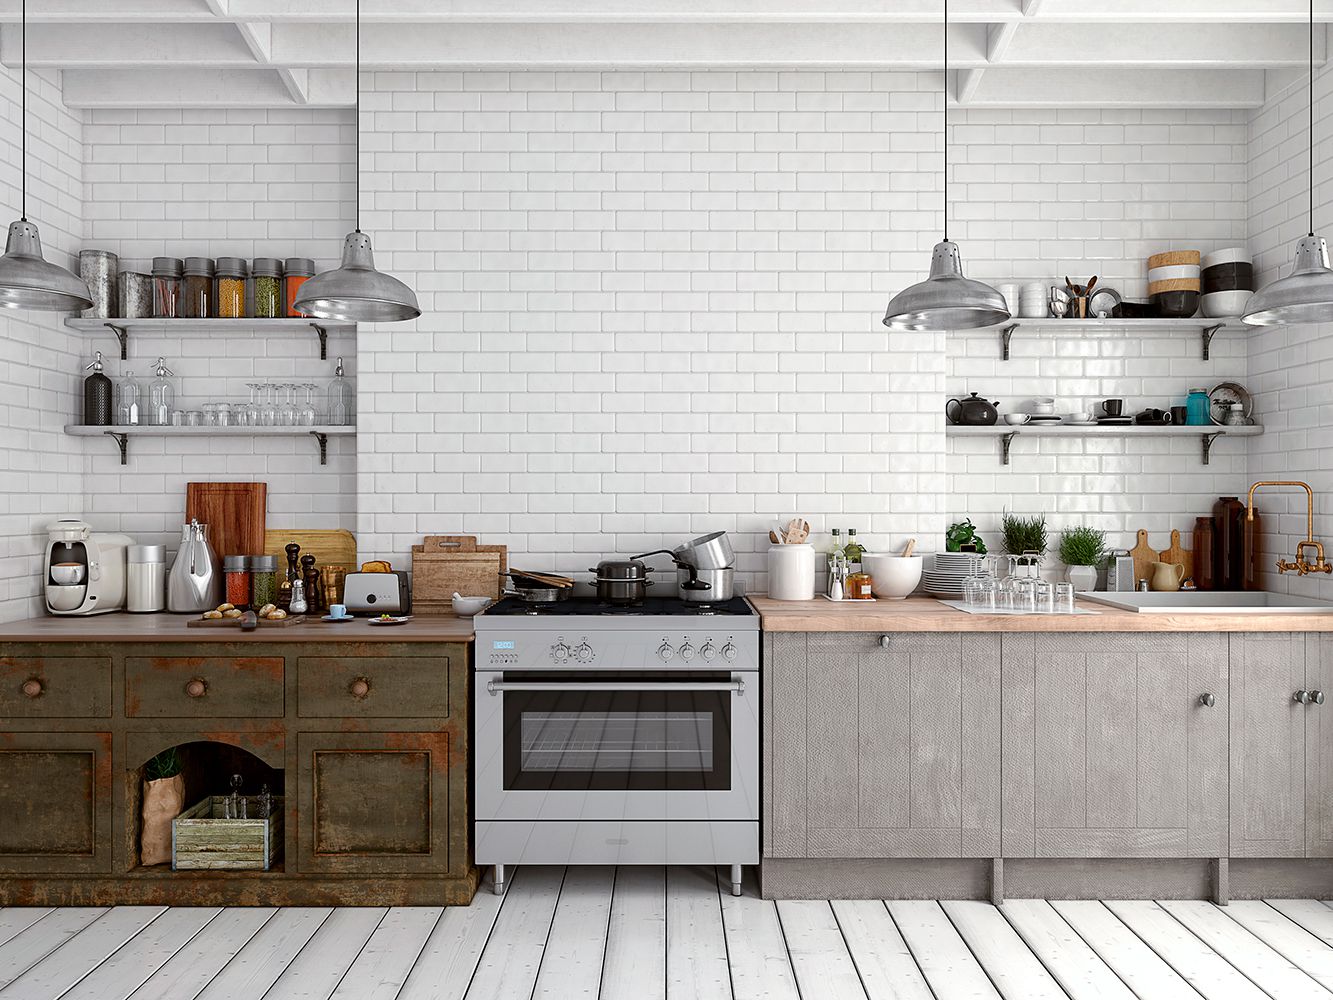 Kitchen Ideas with White Brick Backsplash Luxury the Best Kitchen Backsplash Materials